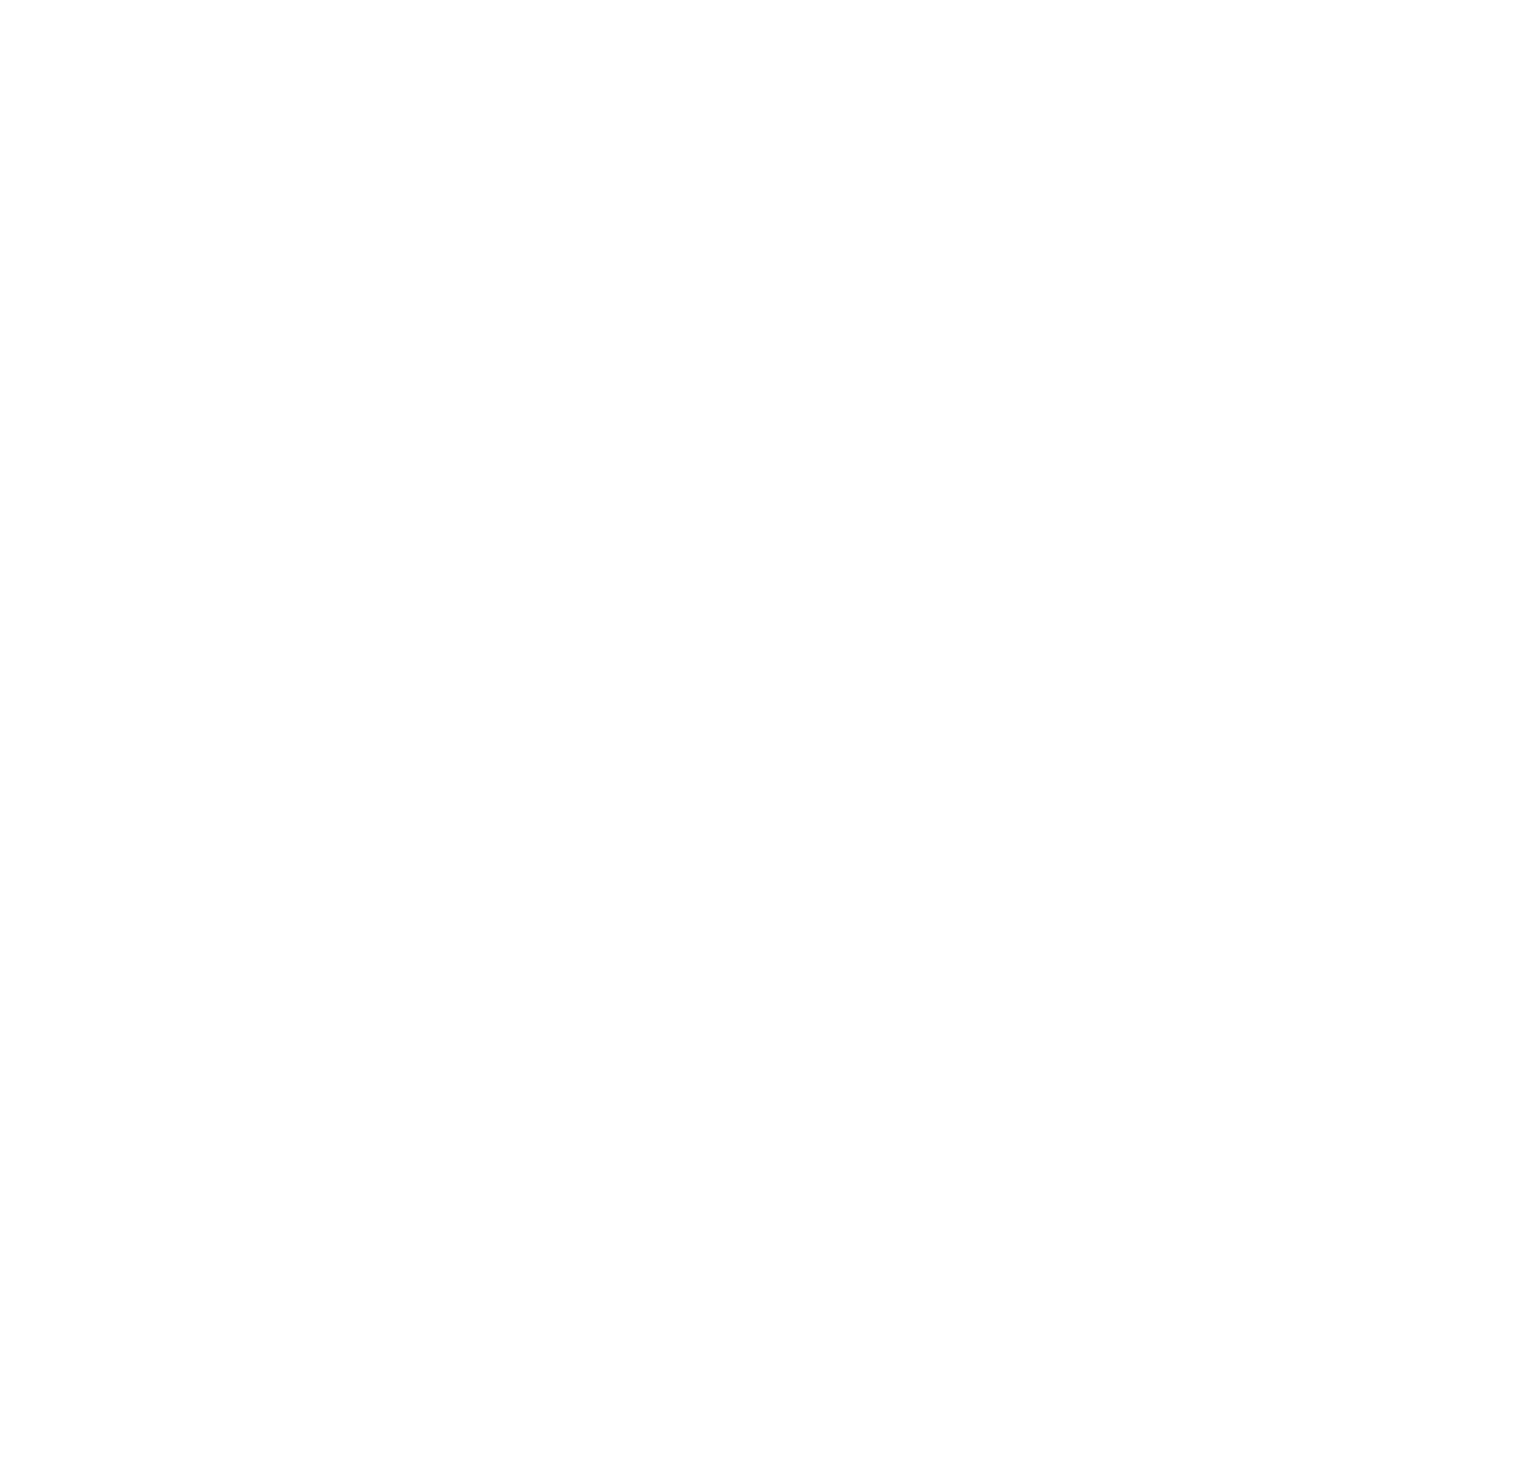 IGM Biosciences logo pour fonds sombres (PNG transparent)